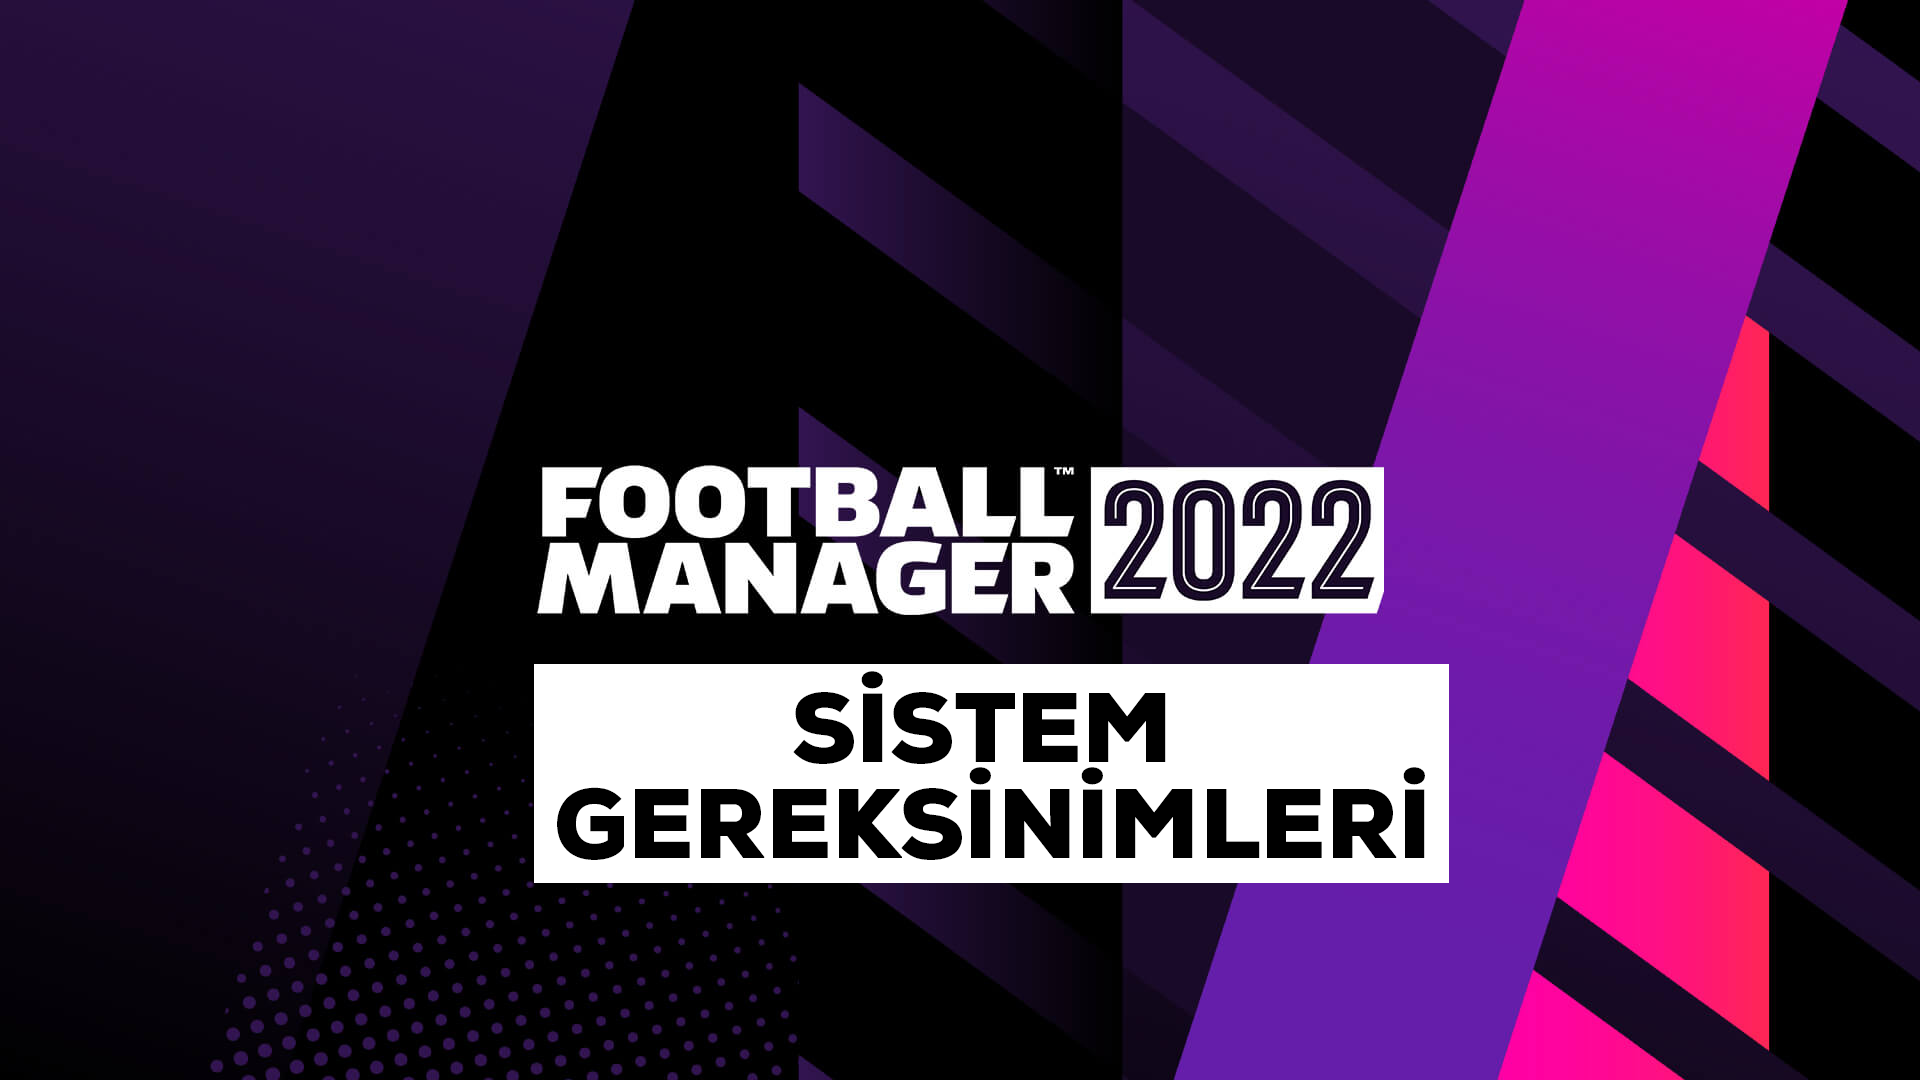 Football Manager 2022 Sistem Gereksinimleri (Windows ve Macbook)